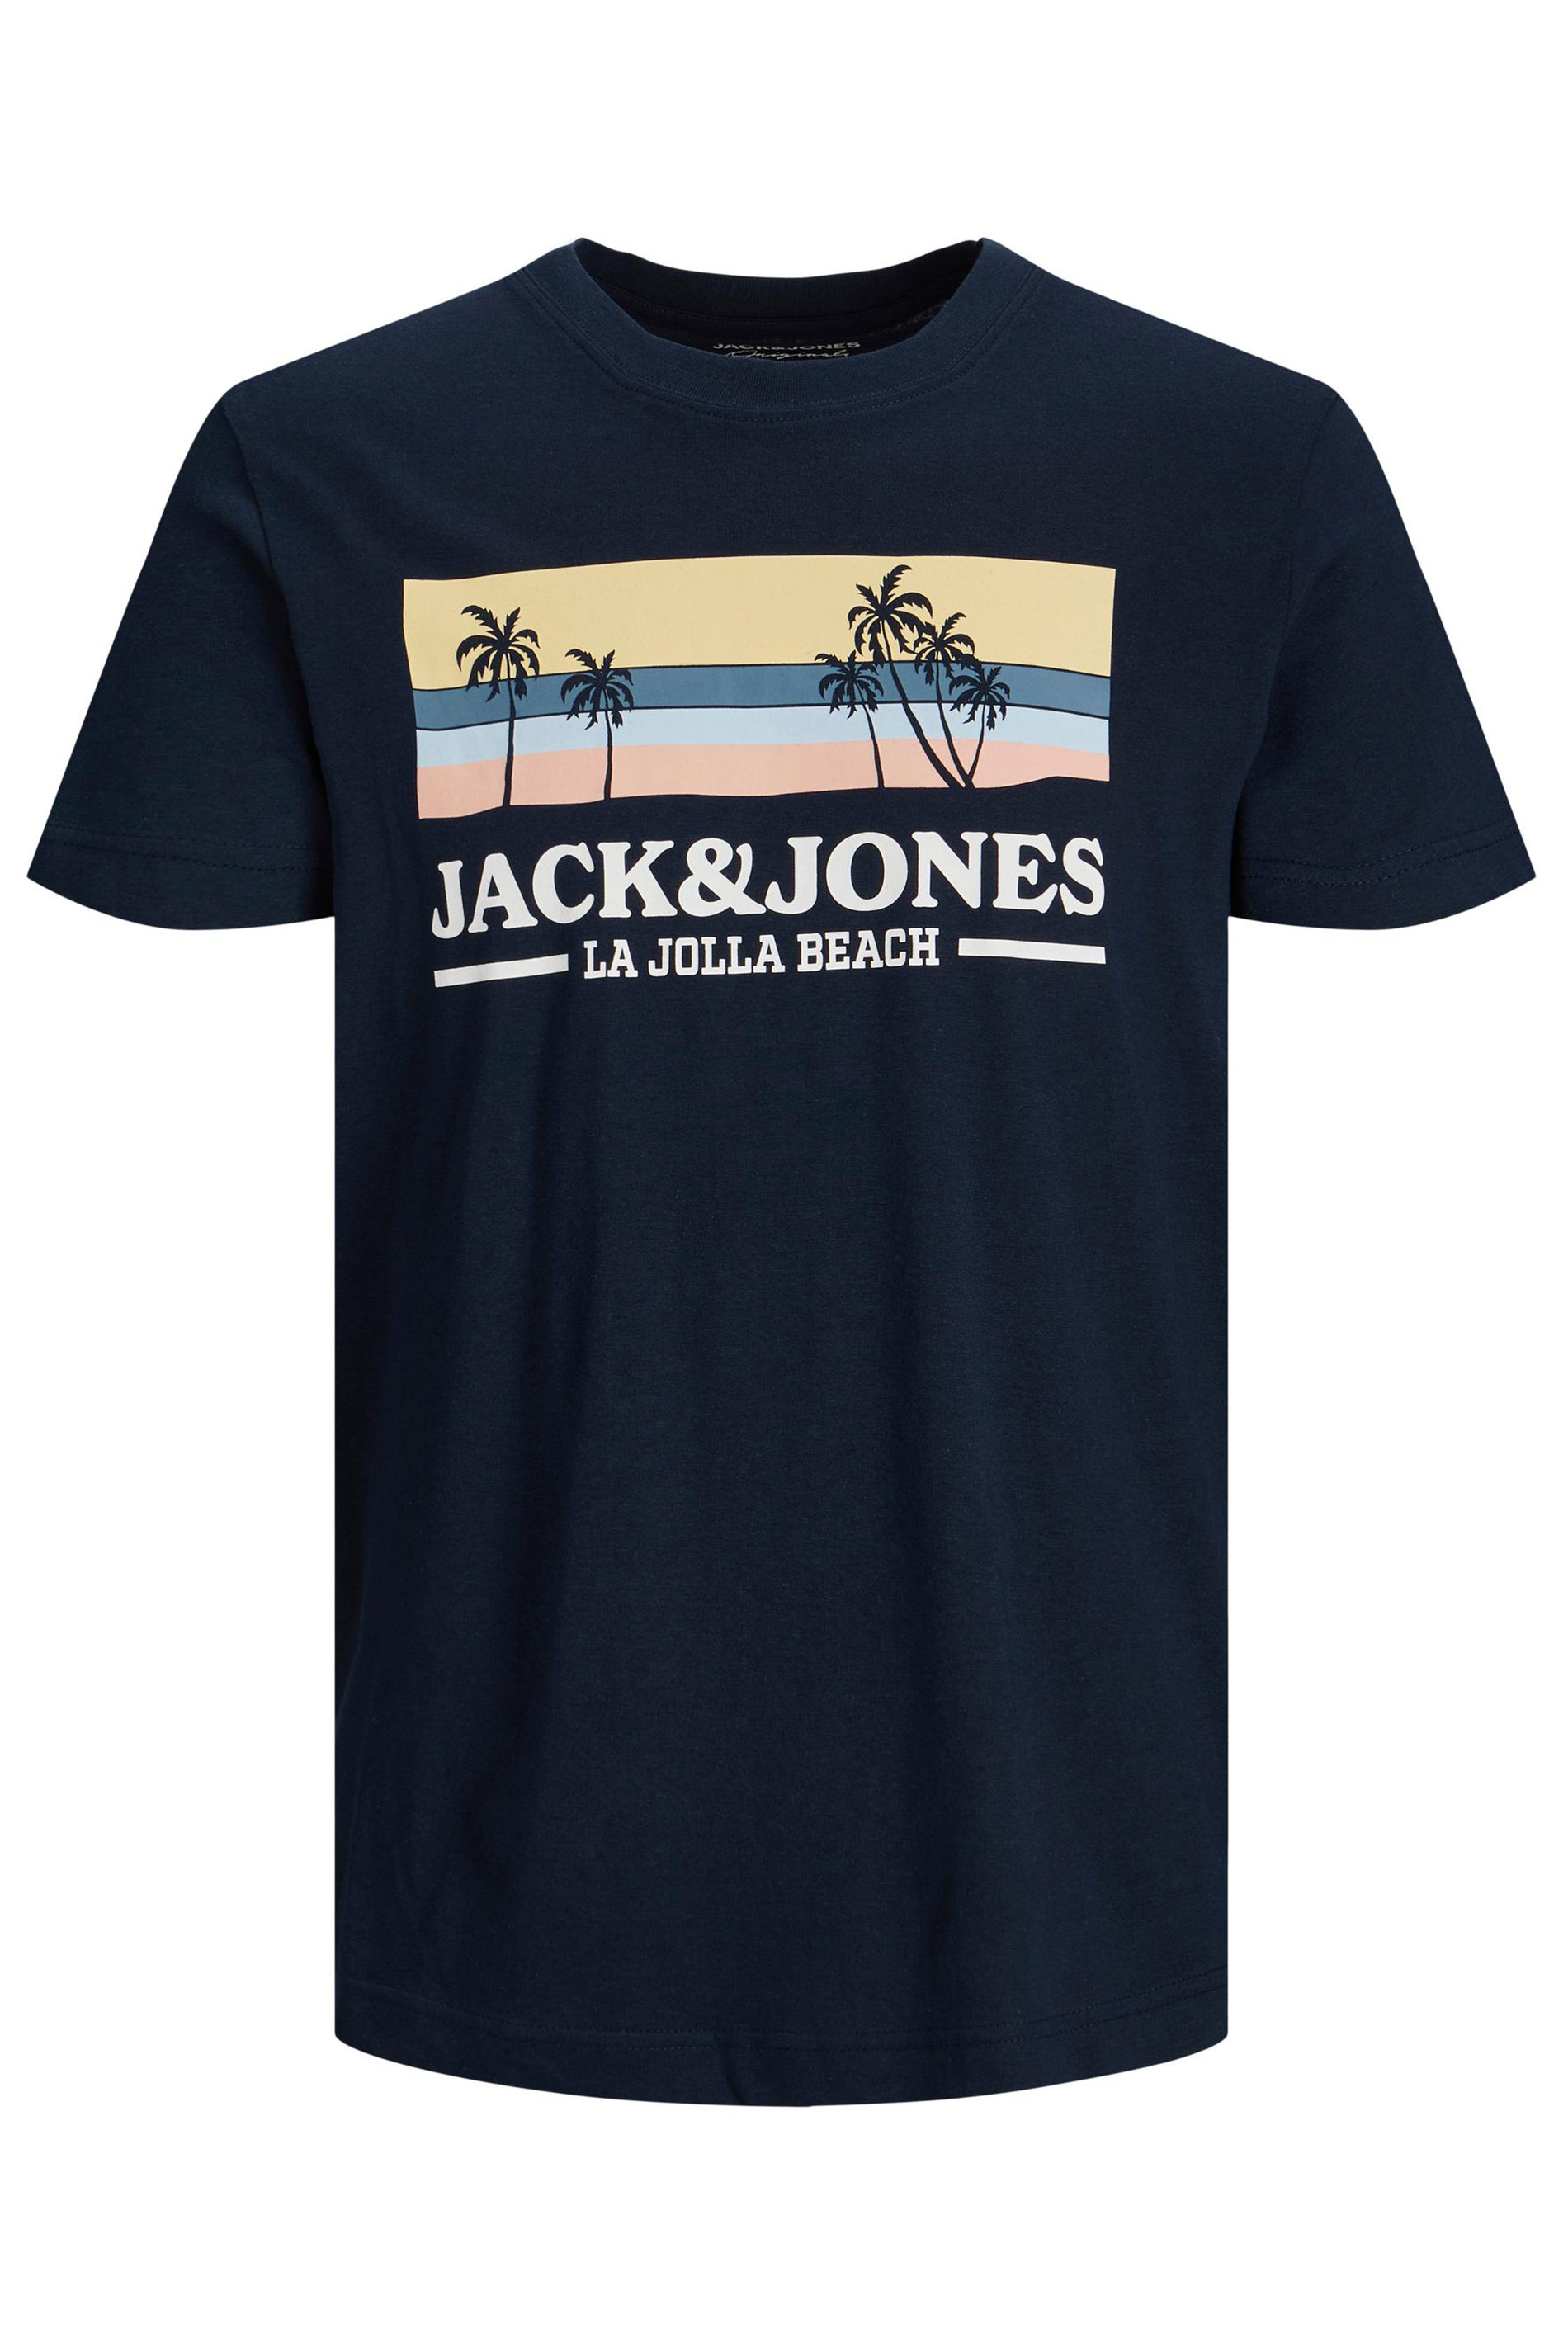 JACK & JONES Big & Tall Navy Blue Malibu T-Shirt_F.jpg